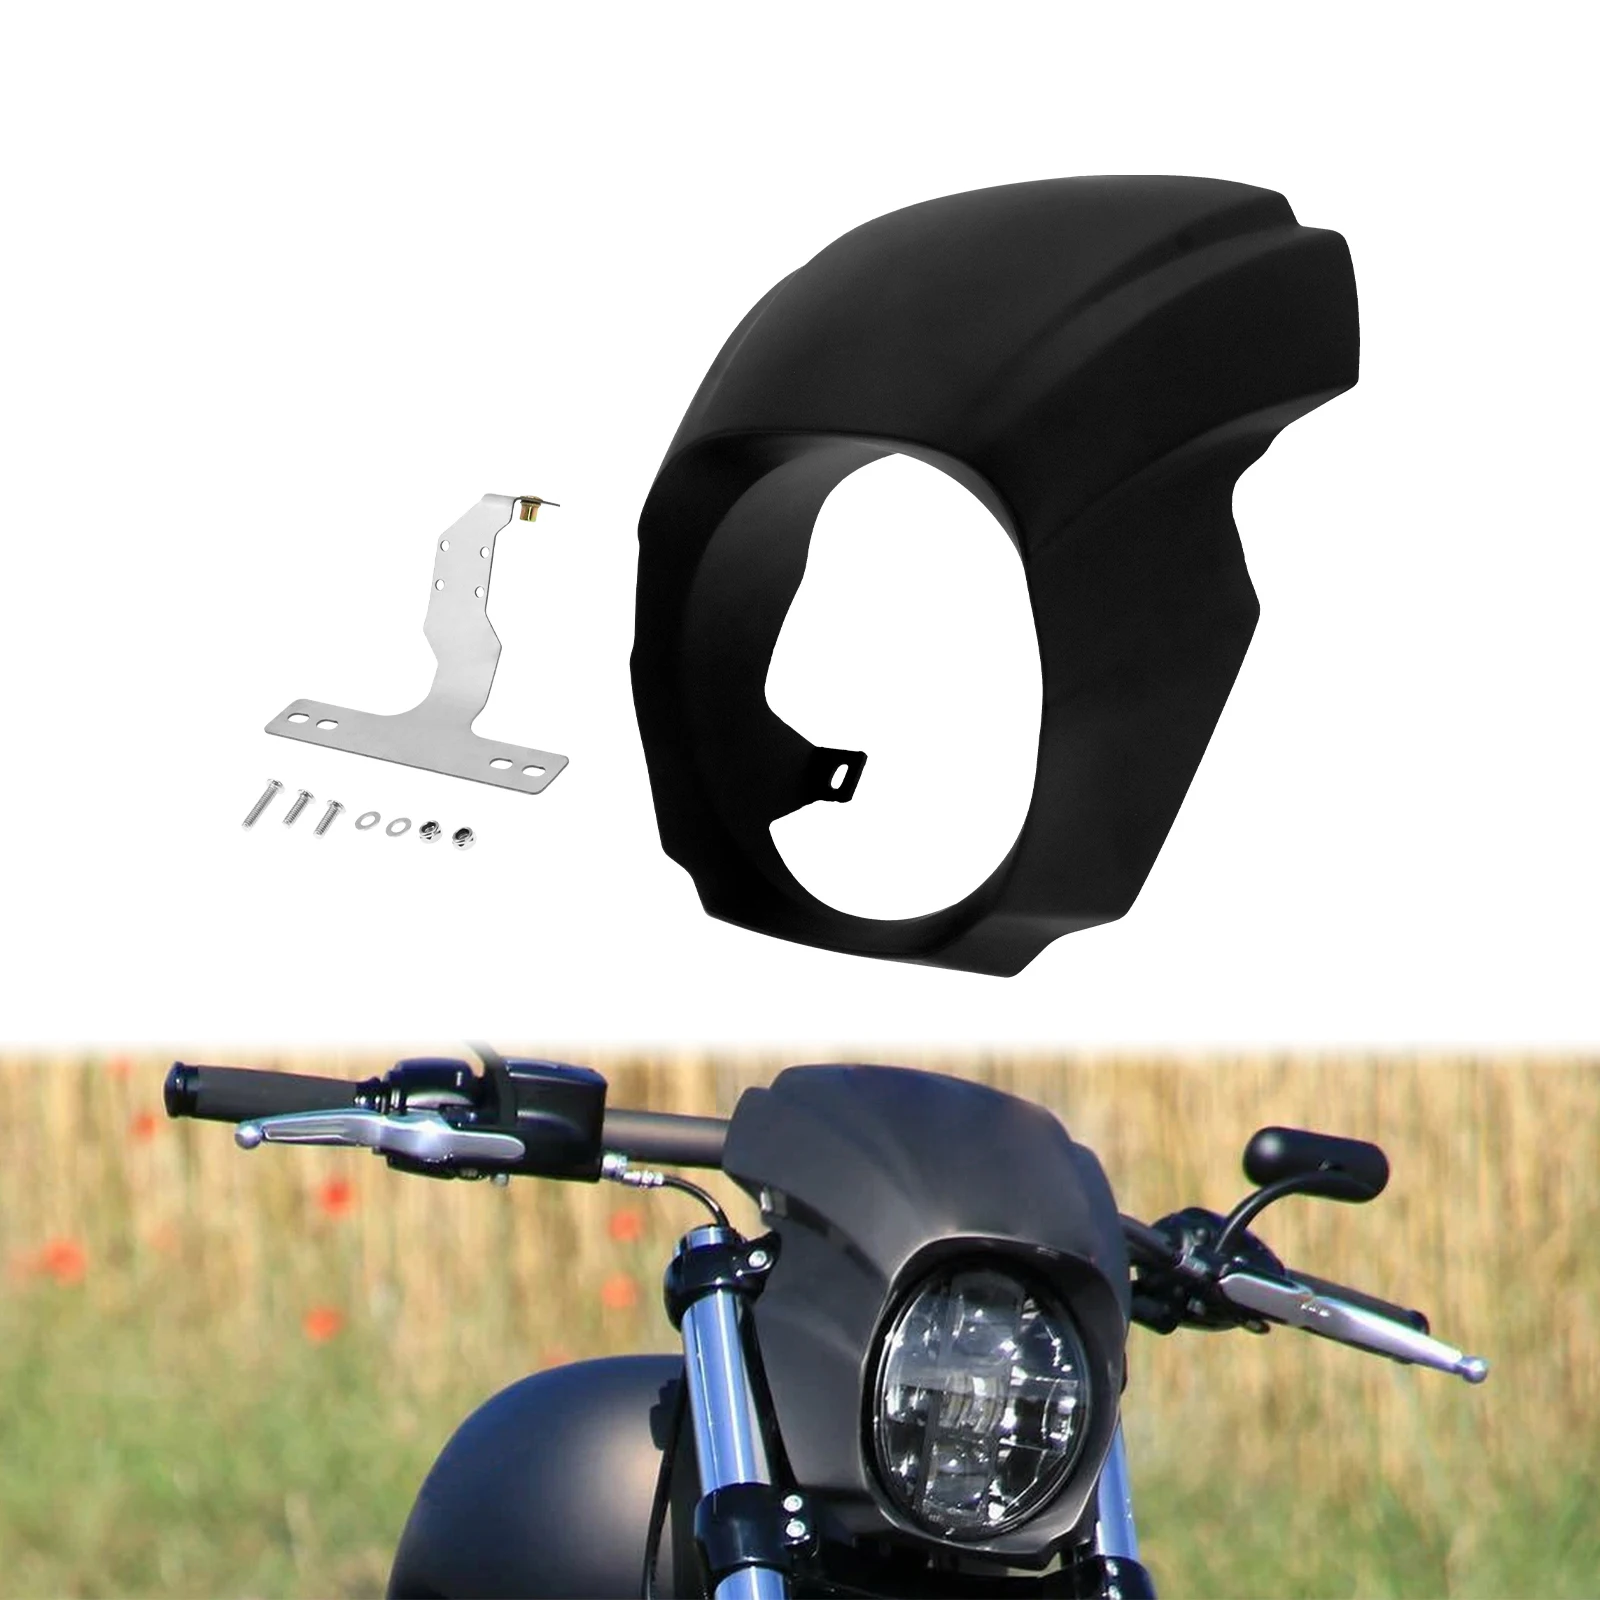 Motorrad Gloss Schwarz Front Scheinwerfer Verkleidung Abdeckung ABS  Kunststoff Für Harley Softail Breakout FXBR FXBRS 2018-2022 2021 2020 -  AliExpress